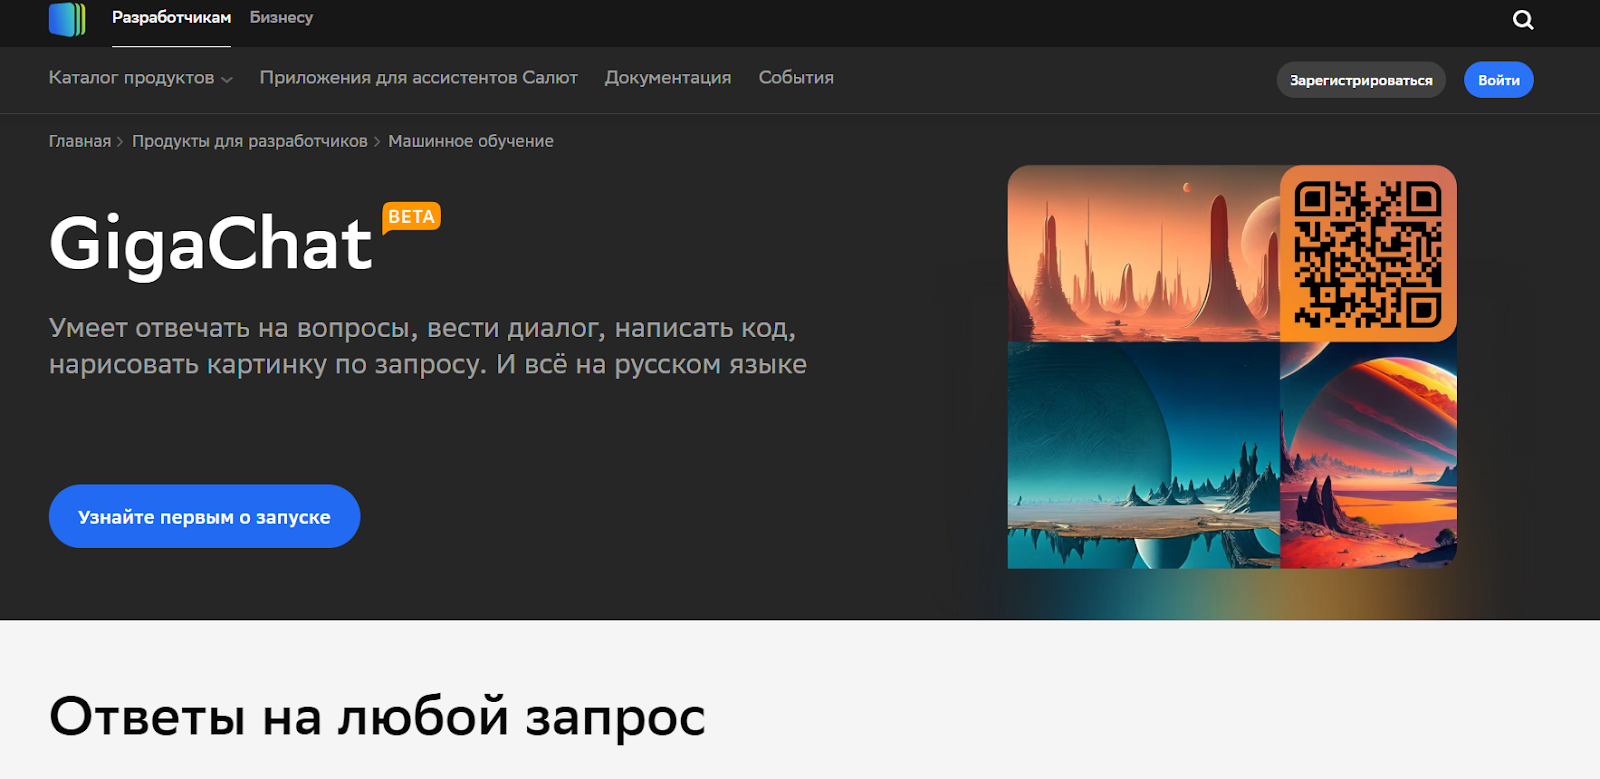 GigaChat - ИИ для создания текстов на русском